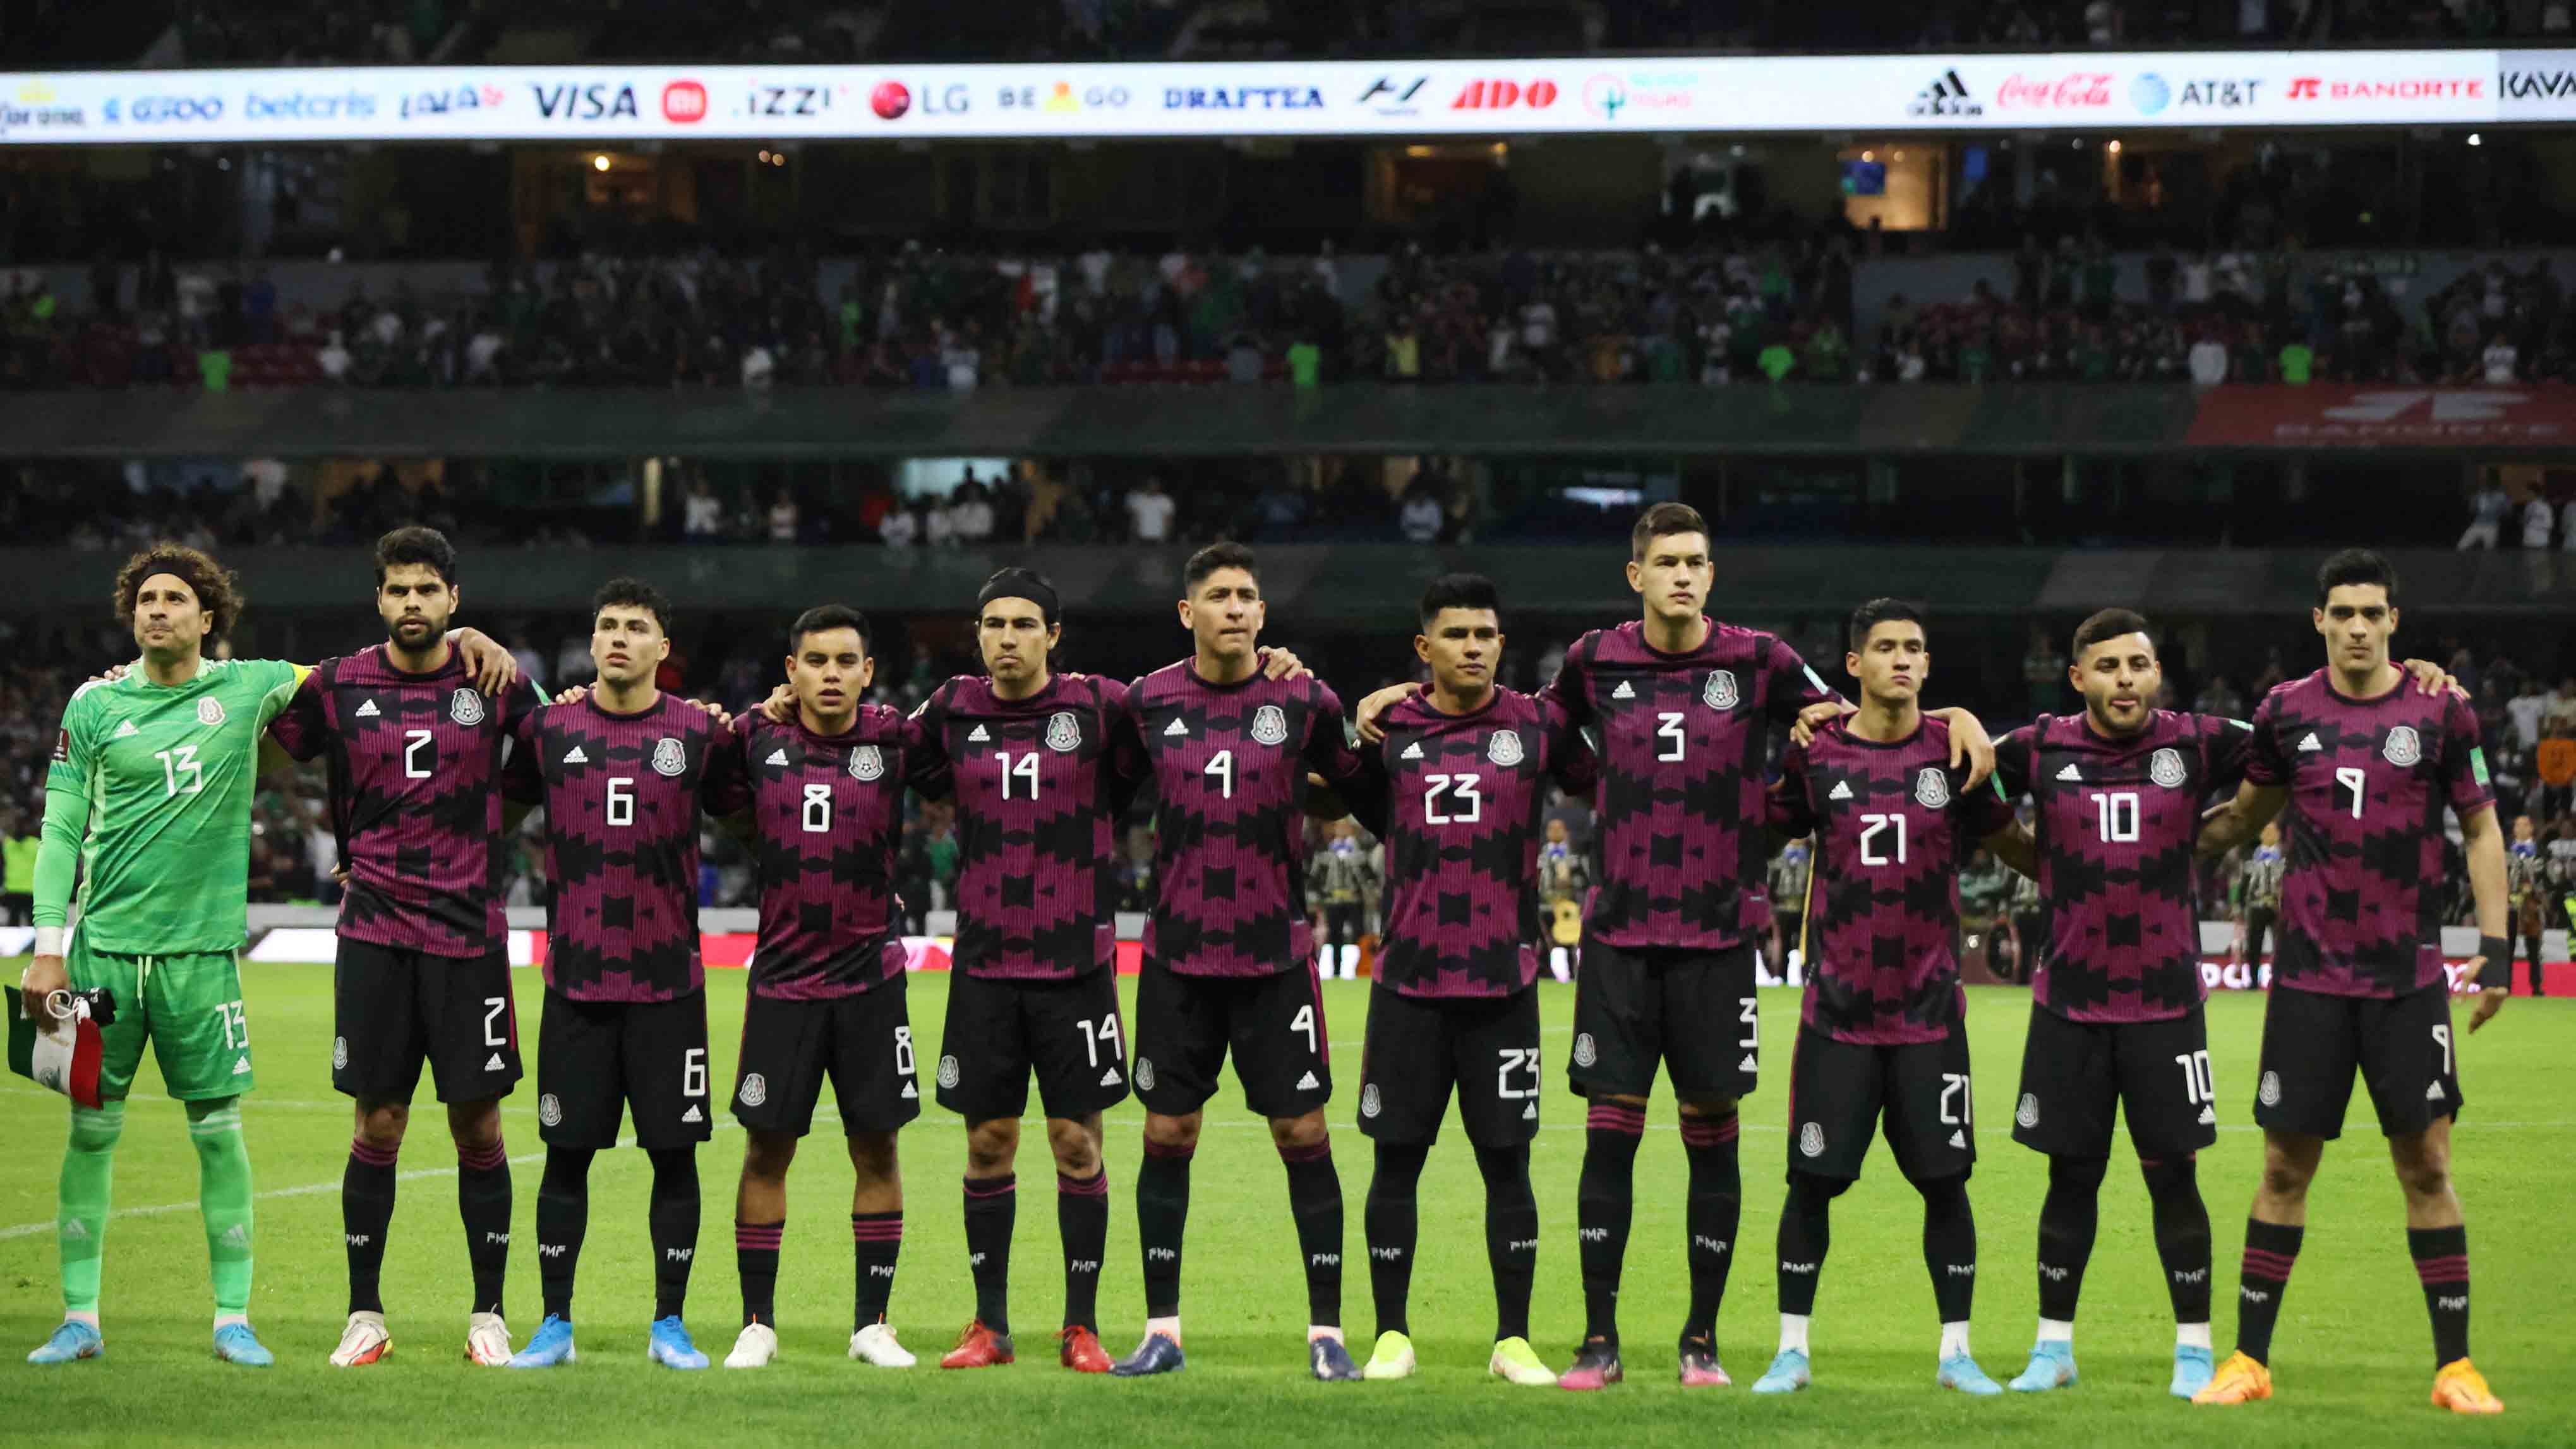 México: 16 participaciones, cuartos de final (1970 y 1986)